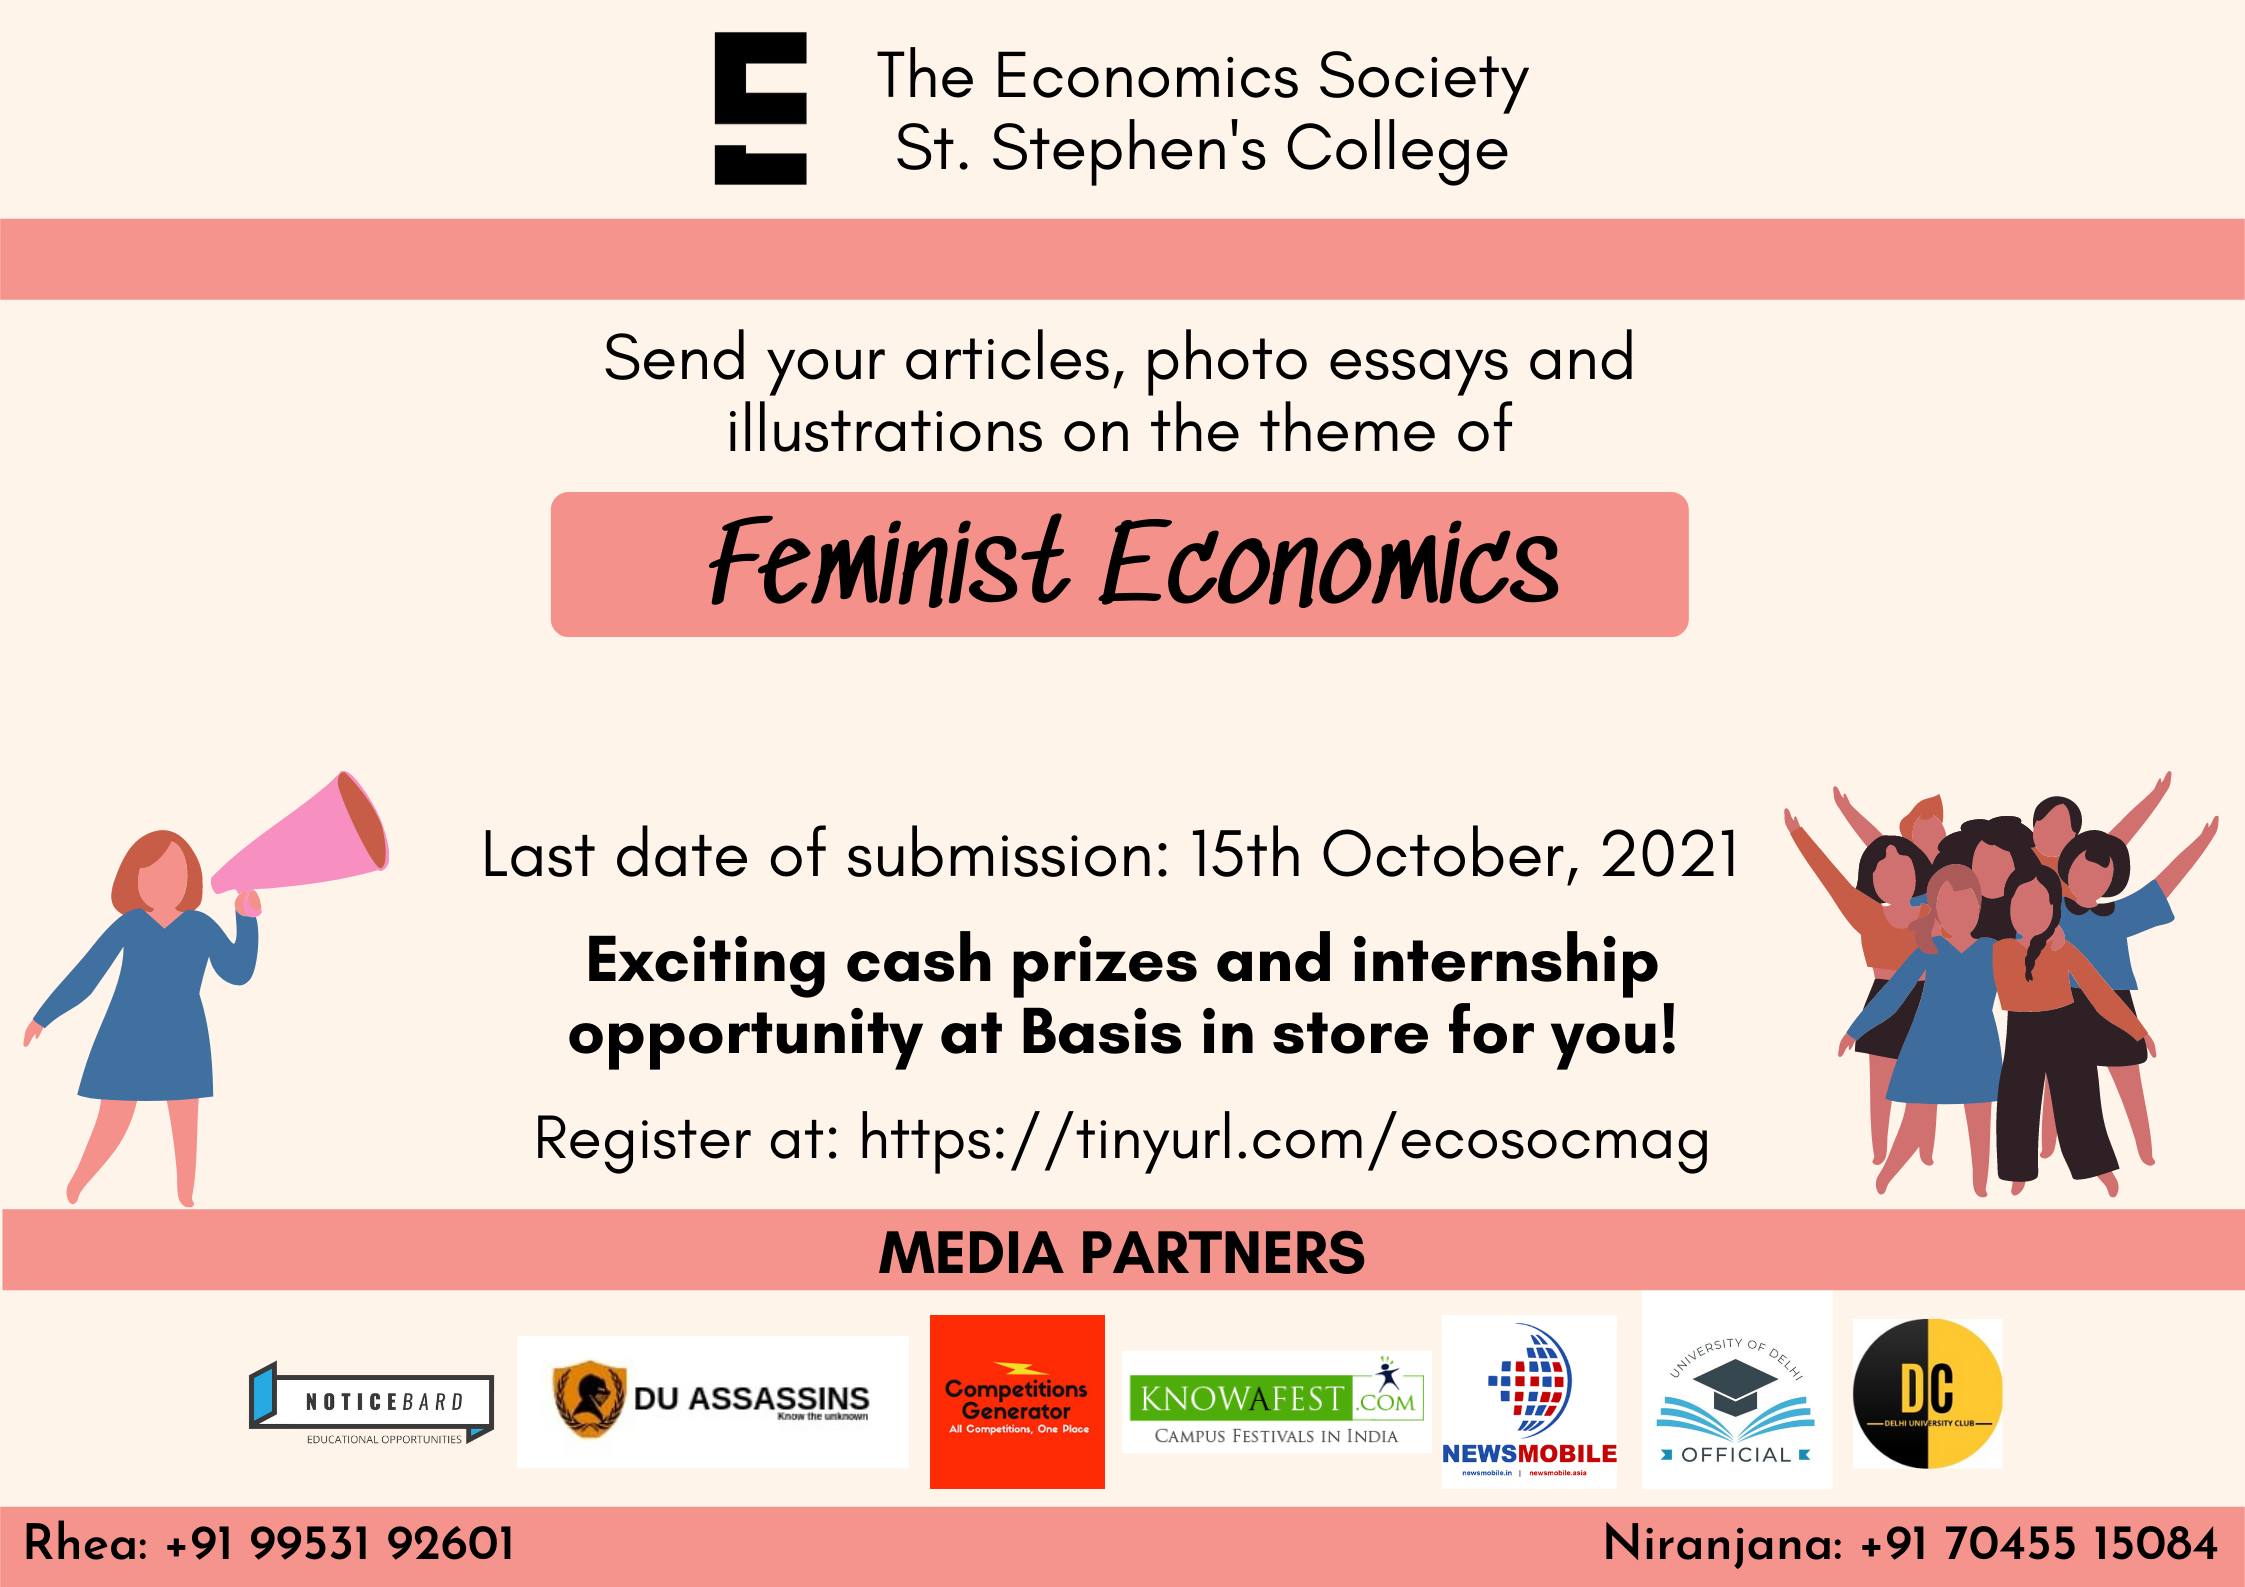 The Economics Society, St. Stephen's College Write On Feminist Economics